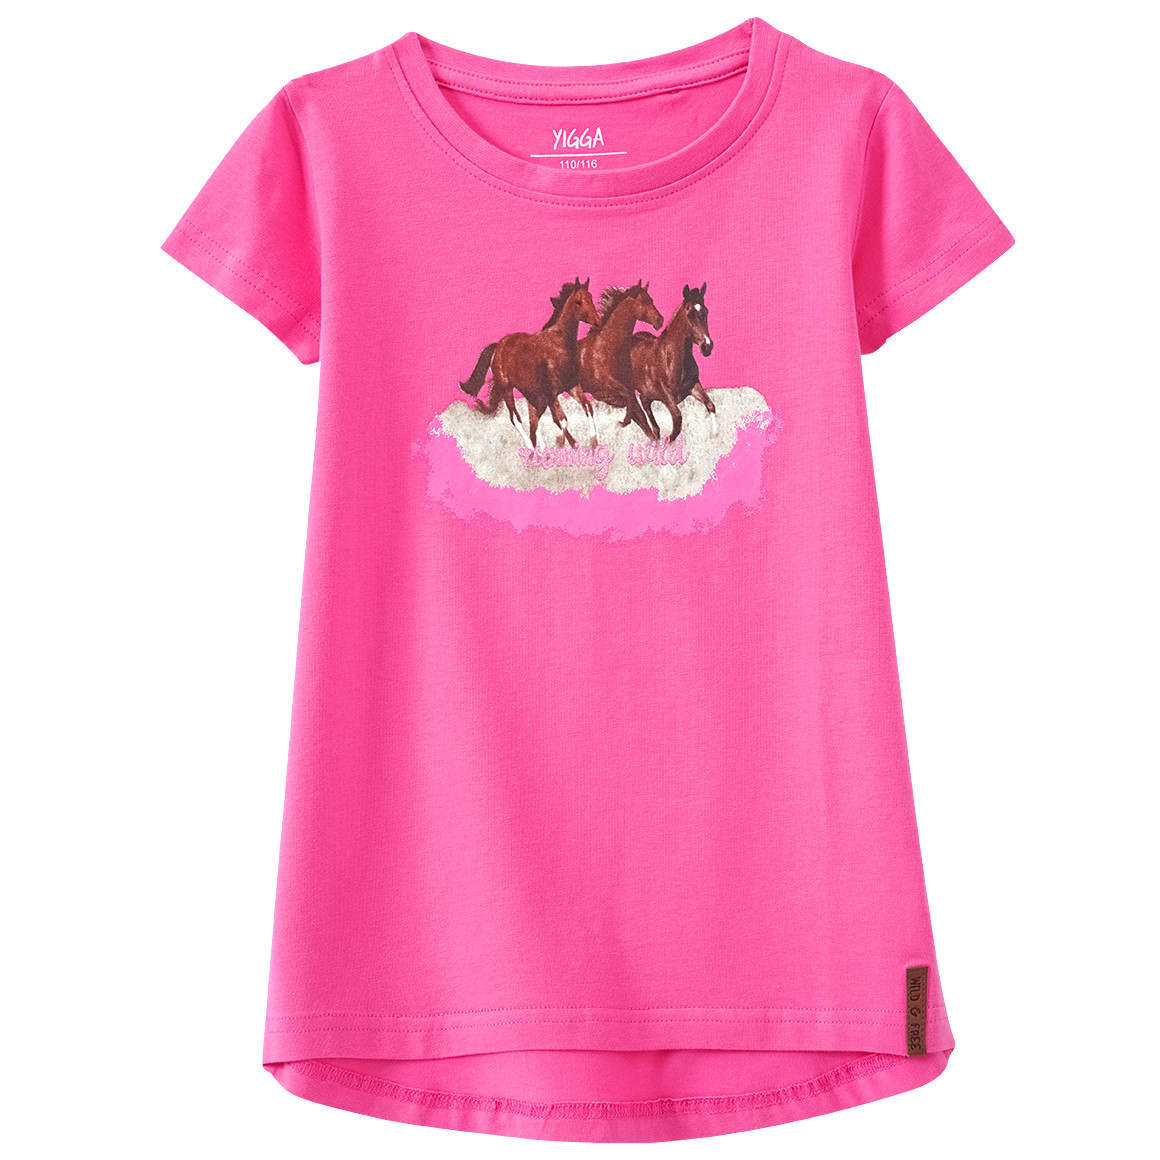 Mädchen T-Shirt mit Pferde-Motiv von Yigga